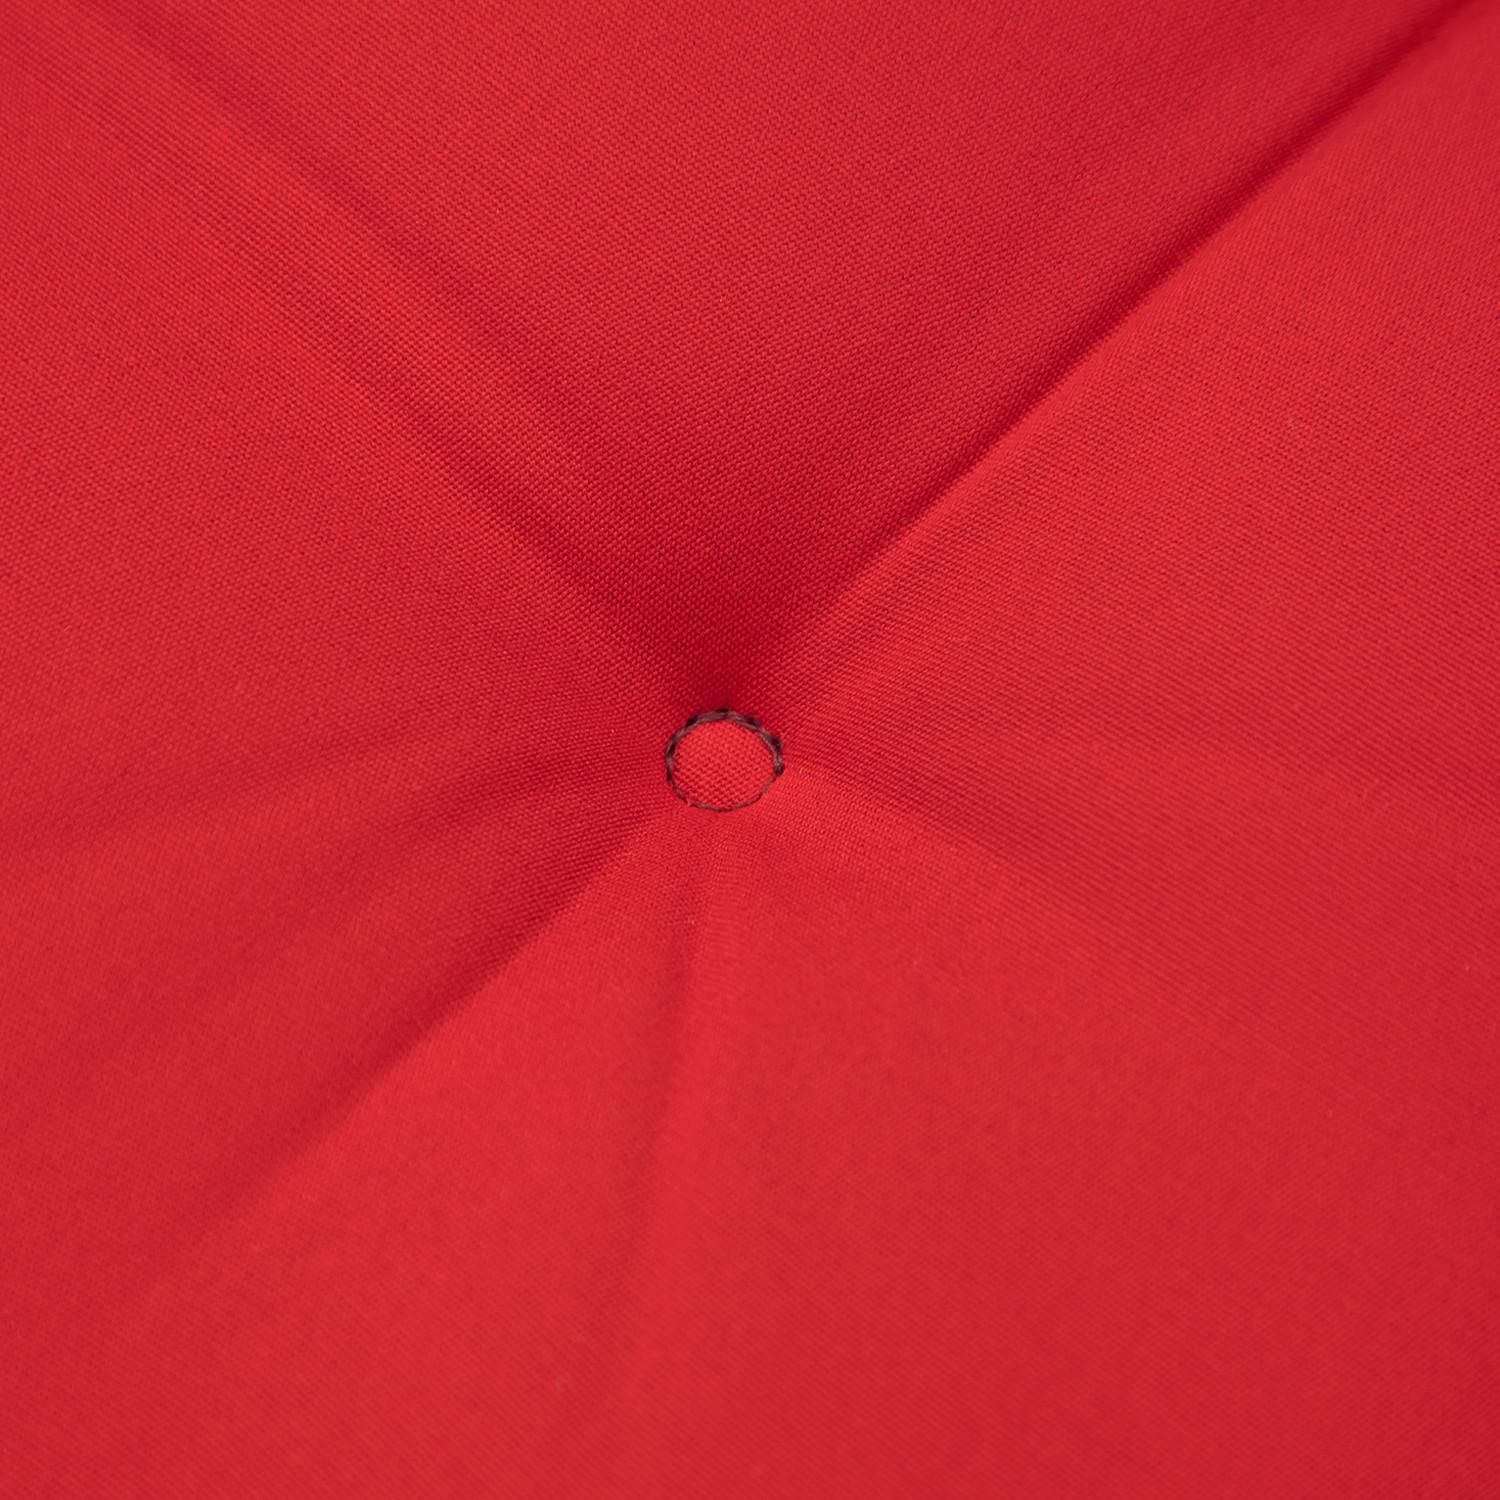 Kopu® Prisma Red - Hoogwaardig Bankkussen 120x50 cm - Rood